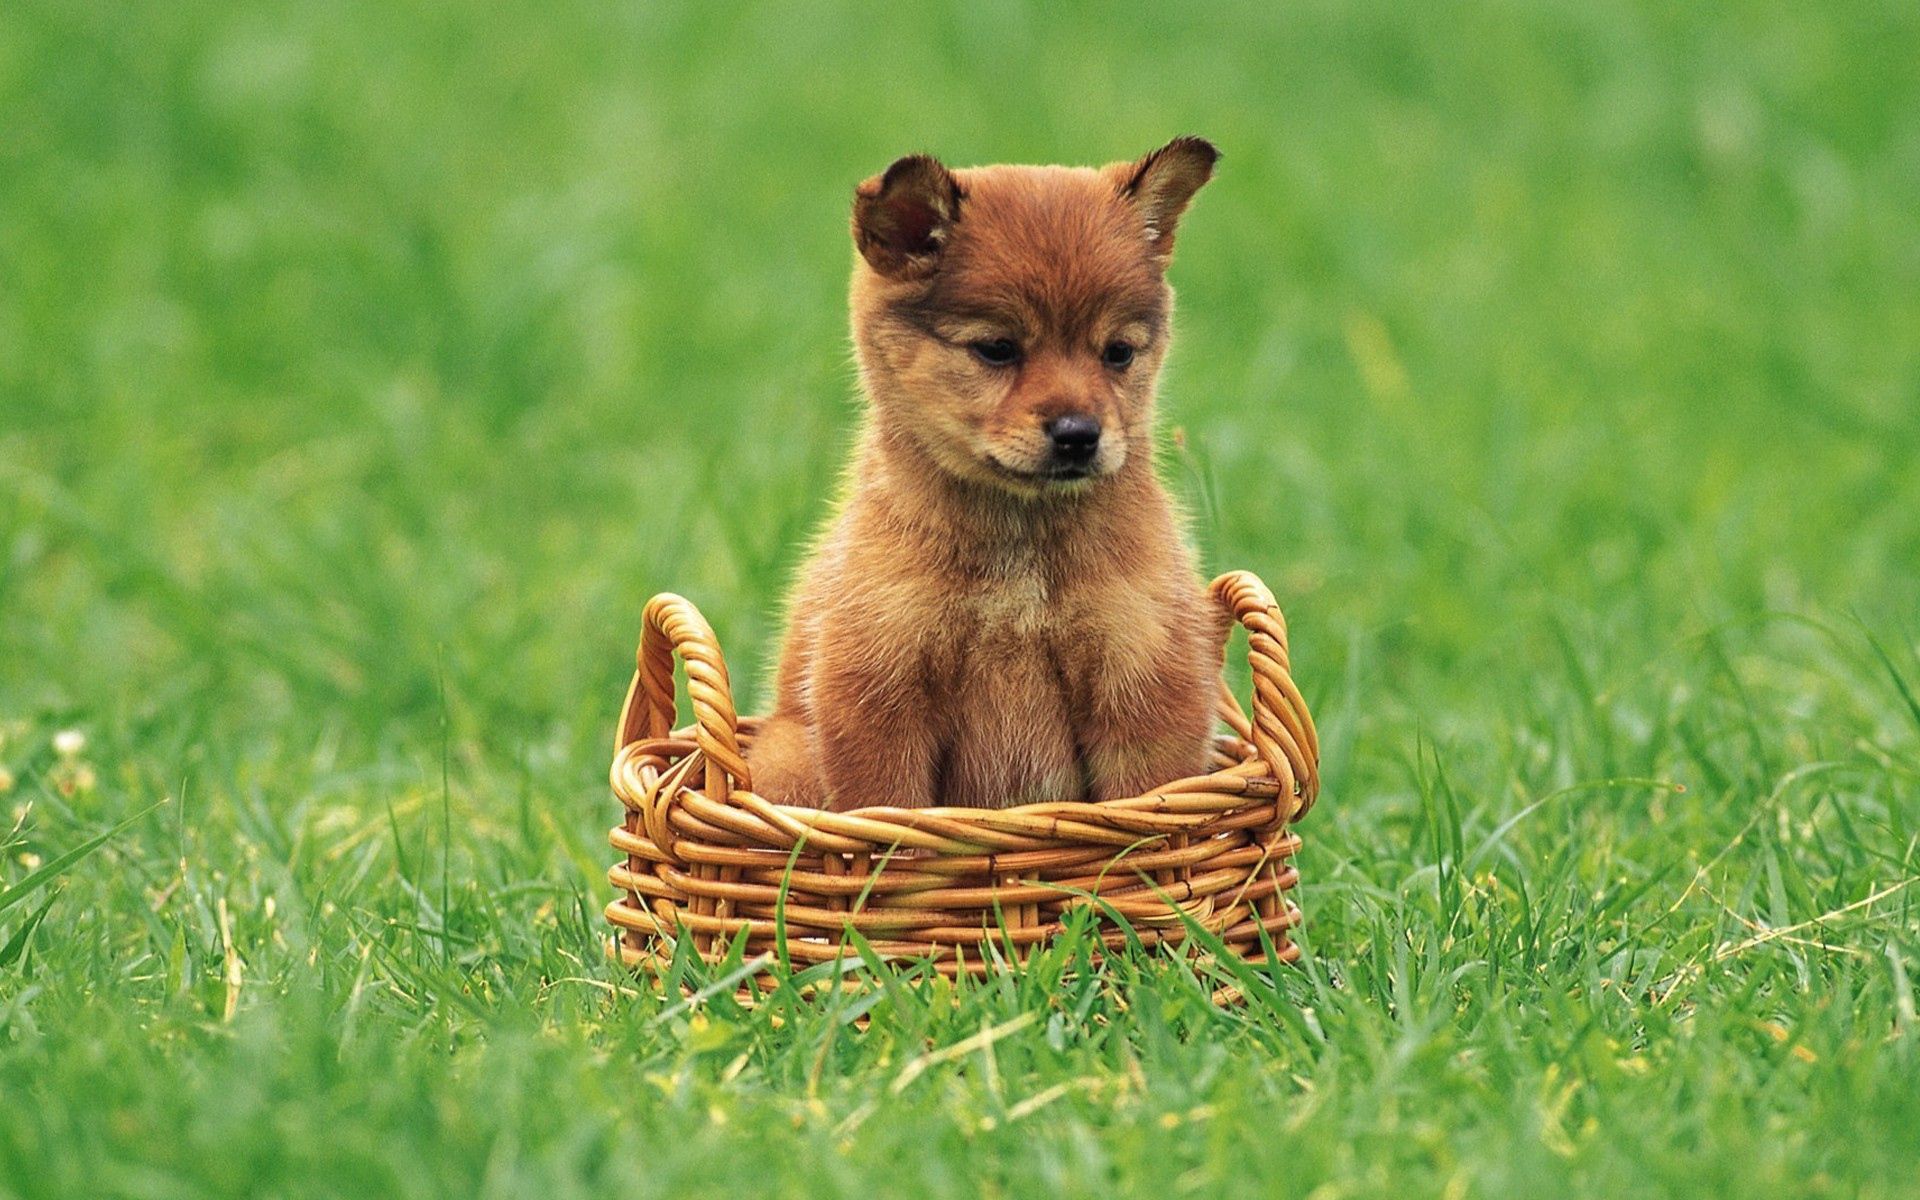 animals, grass, puppy, kid, tot, basket